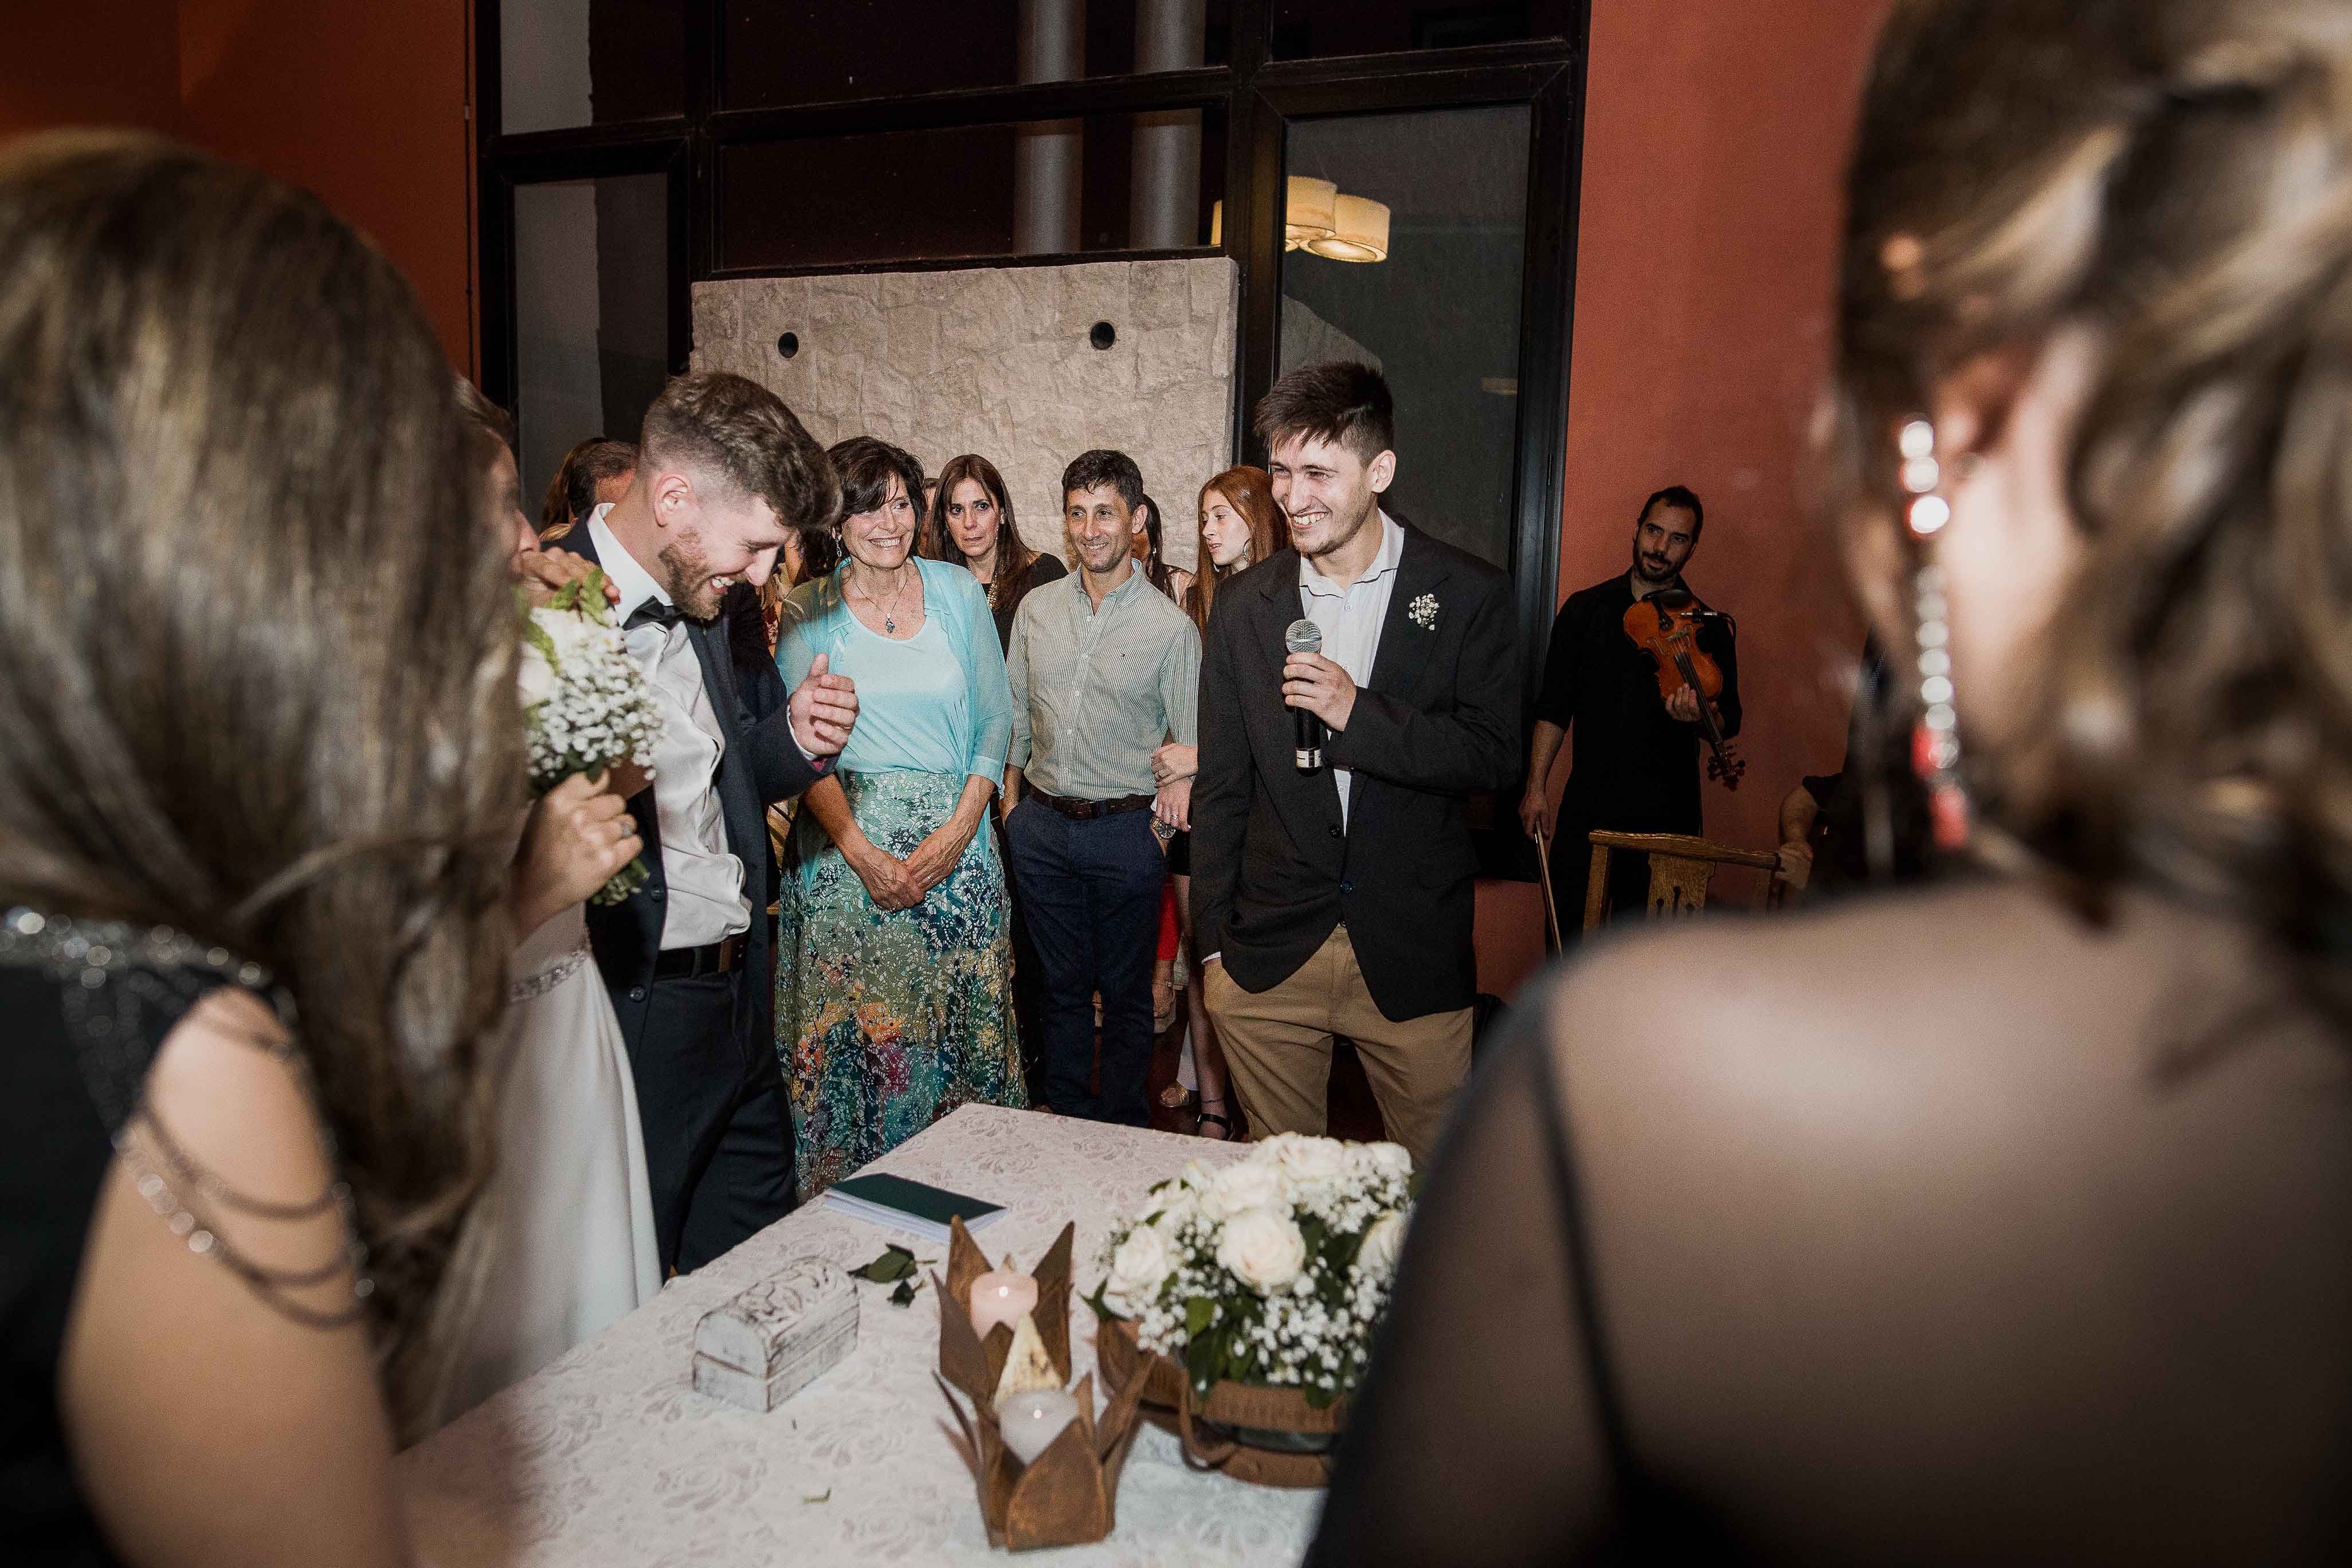 Fotos de la boda de Ani y Gonza en Victoria realizadas por Bucle Fotografías Flor Bosio y Caro Clerici